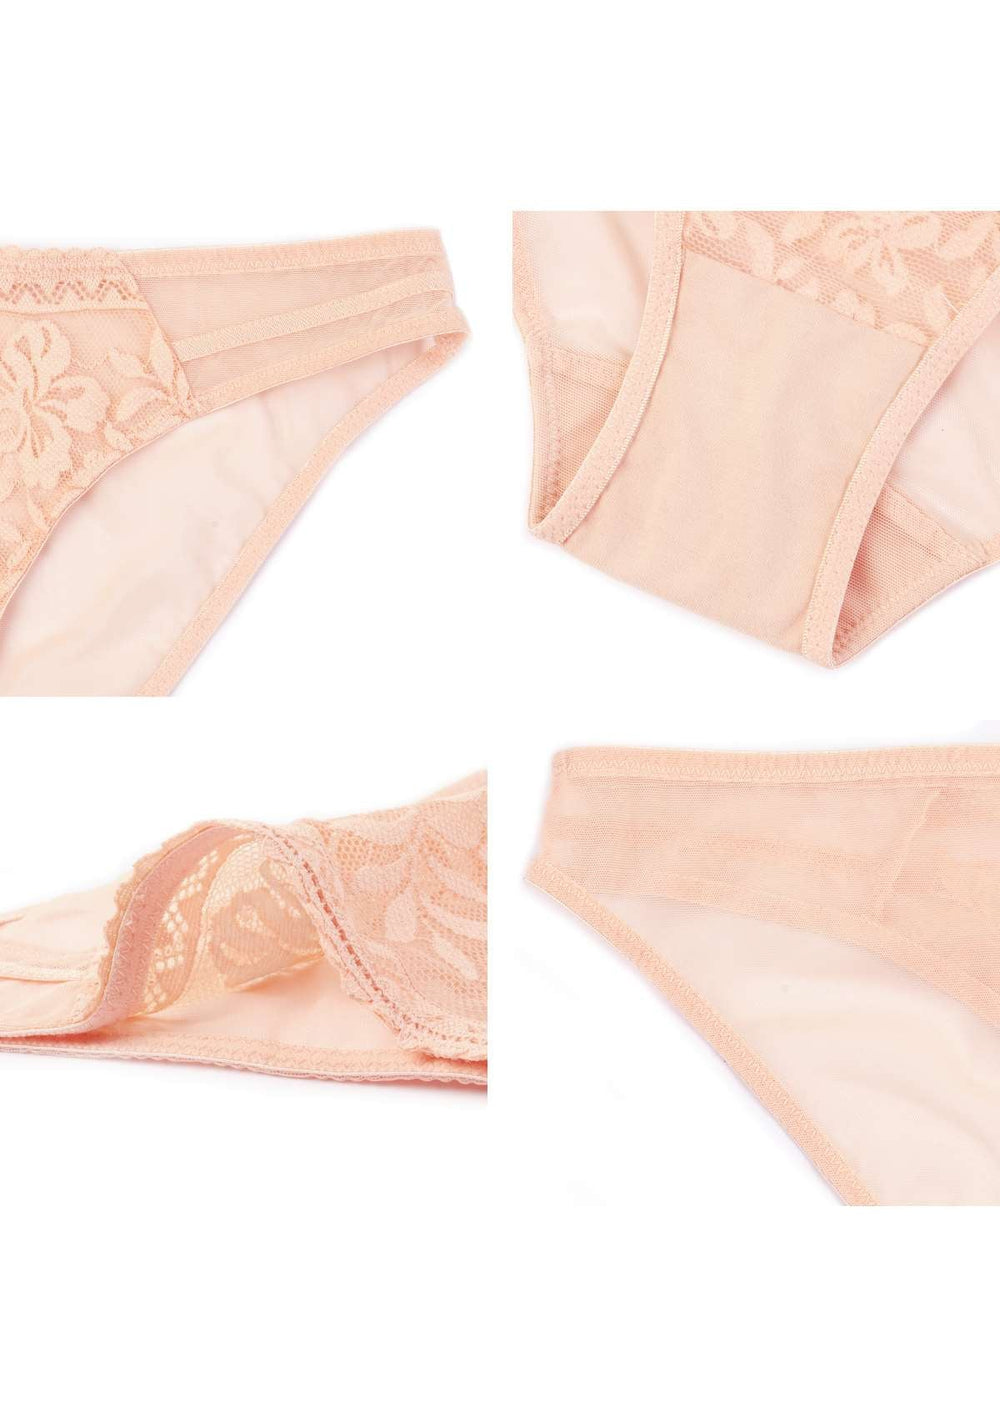 https://www.hsialife.com/cdn/shop/files/hsia-gladioli-peach-floral-lace-bikini-underwear-39160631558393.jpg?v=1684156640&width=1000